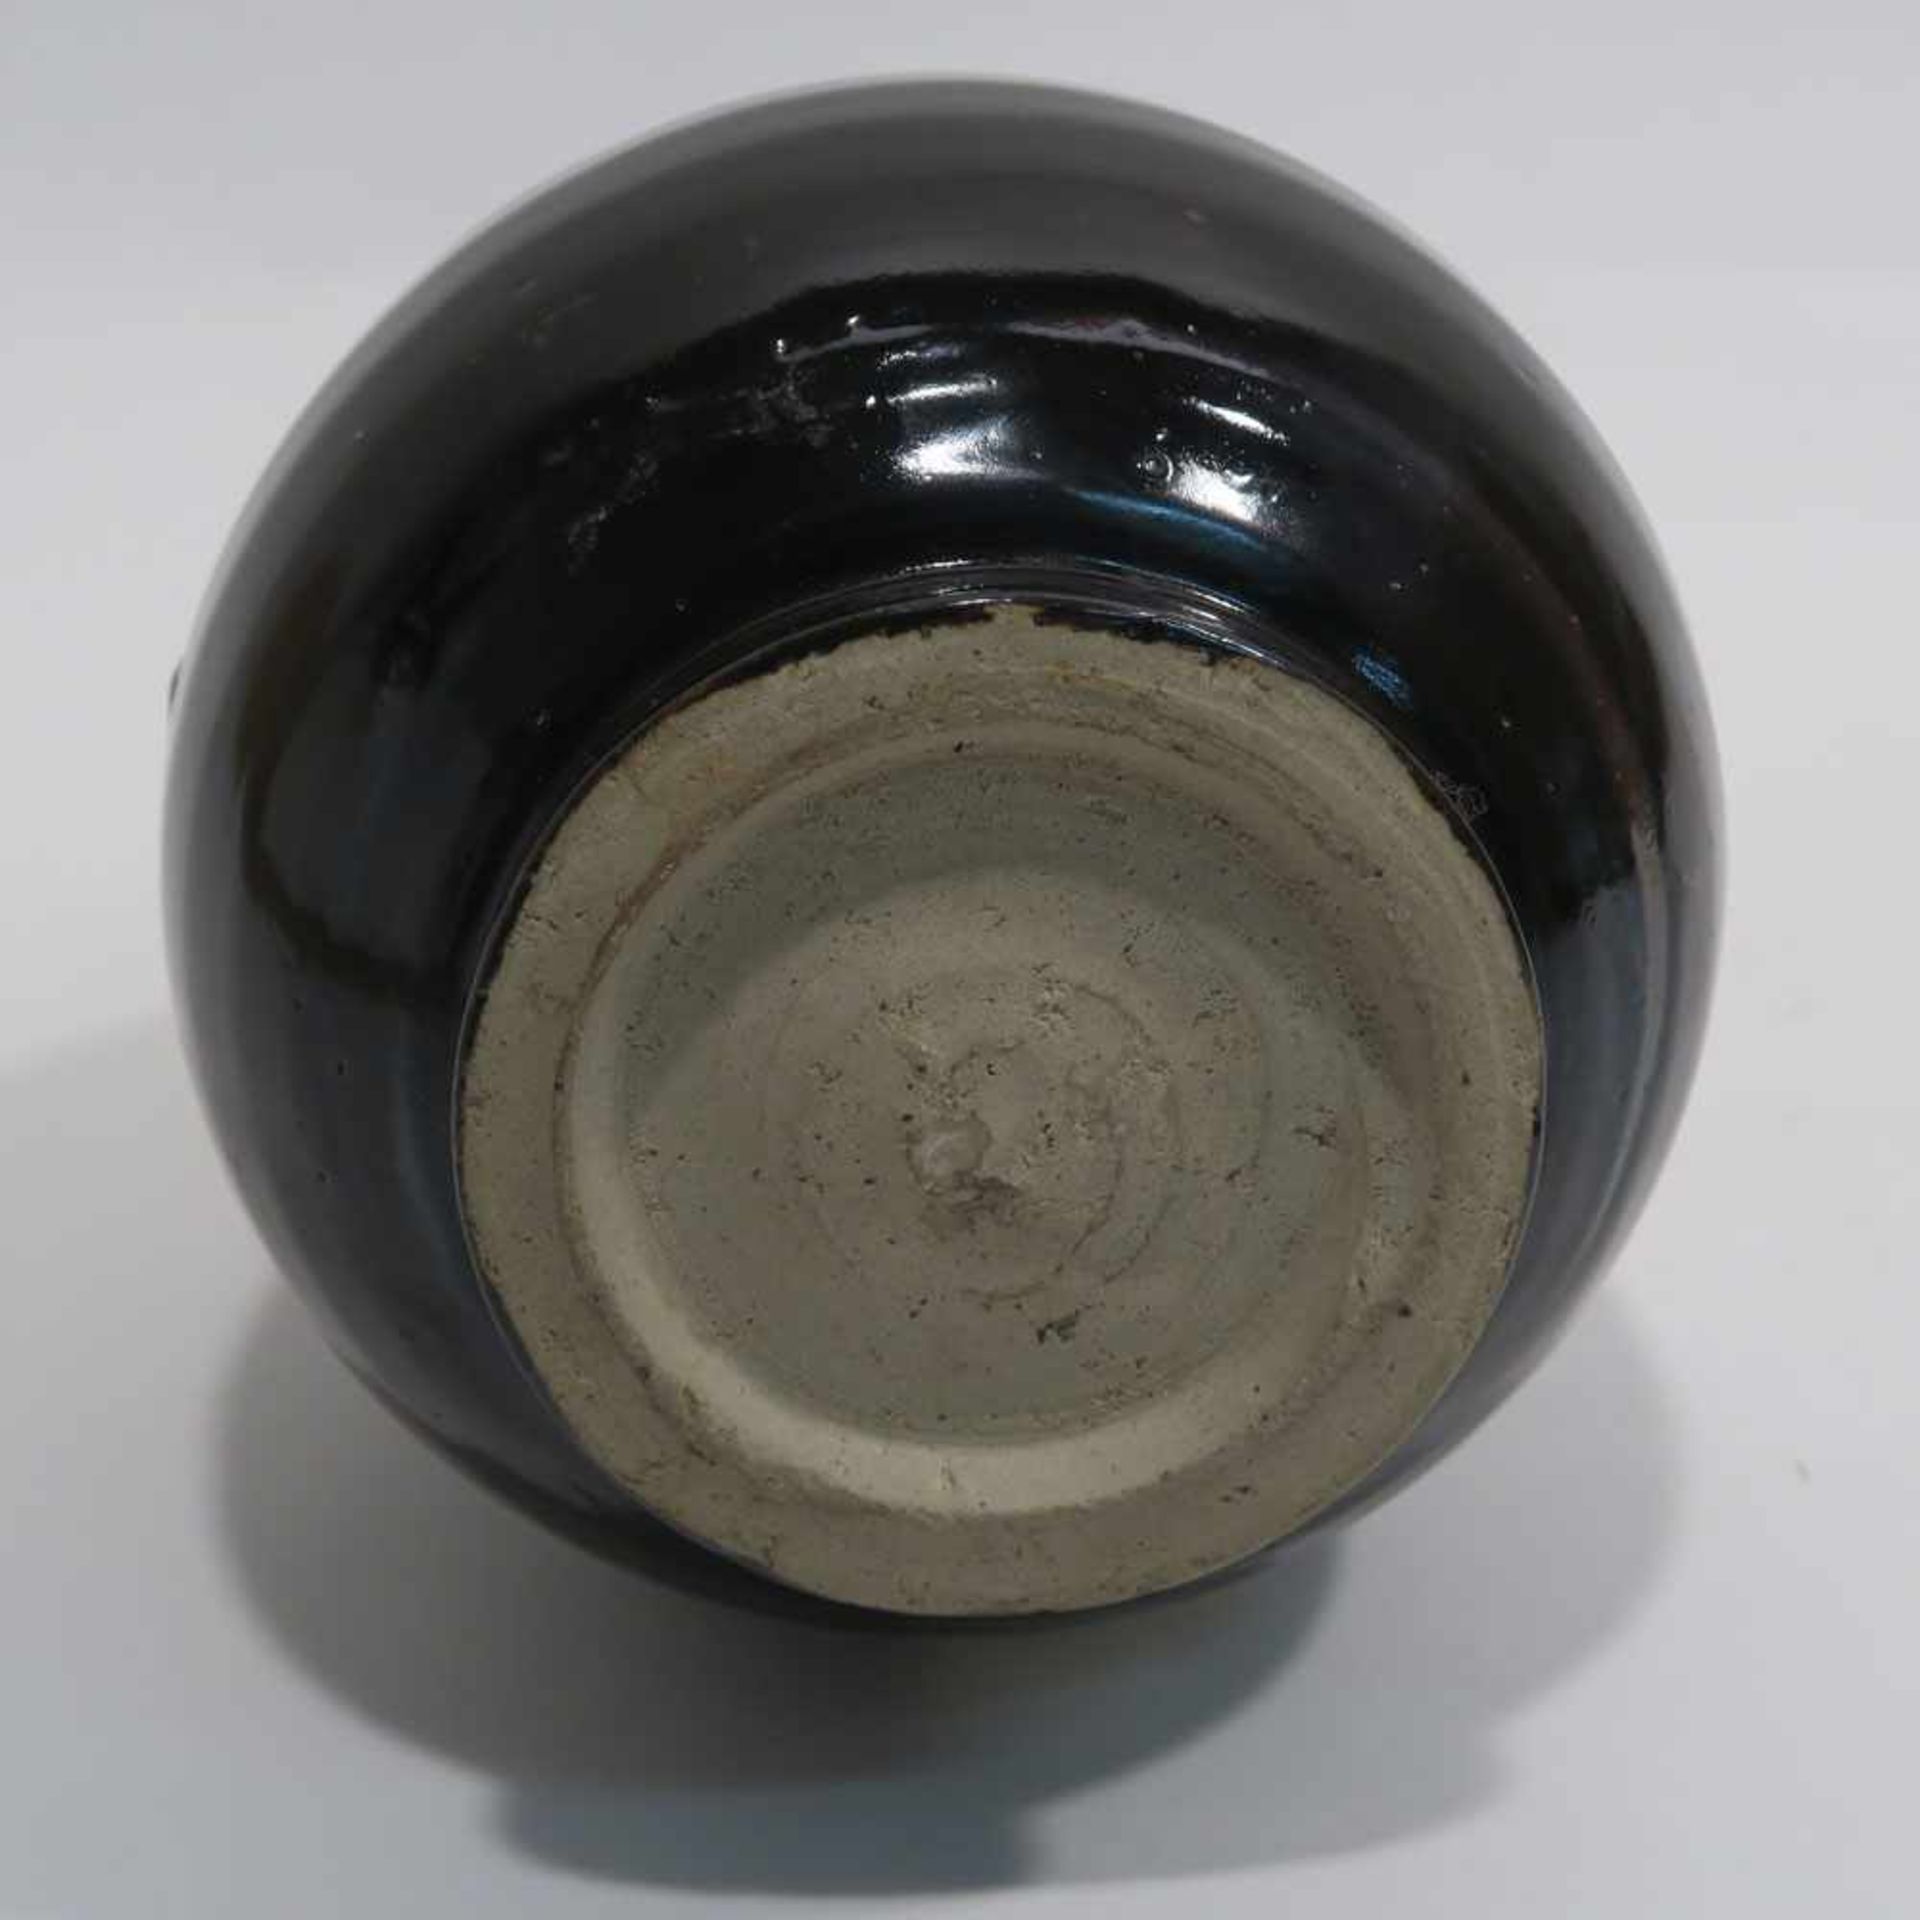 VaseChina, im Stil der Ming-Zeit. Steinzeug in der Art der Cizhou-Keramiken. Birnform mit - Bild 9 aus 10